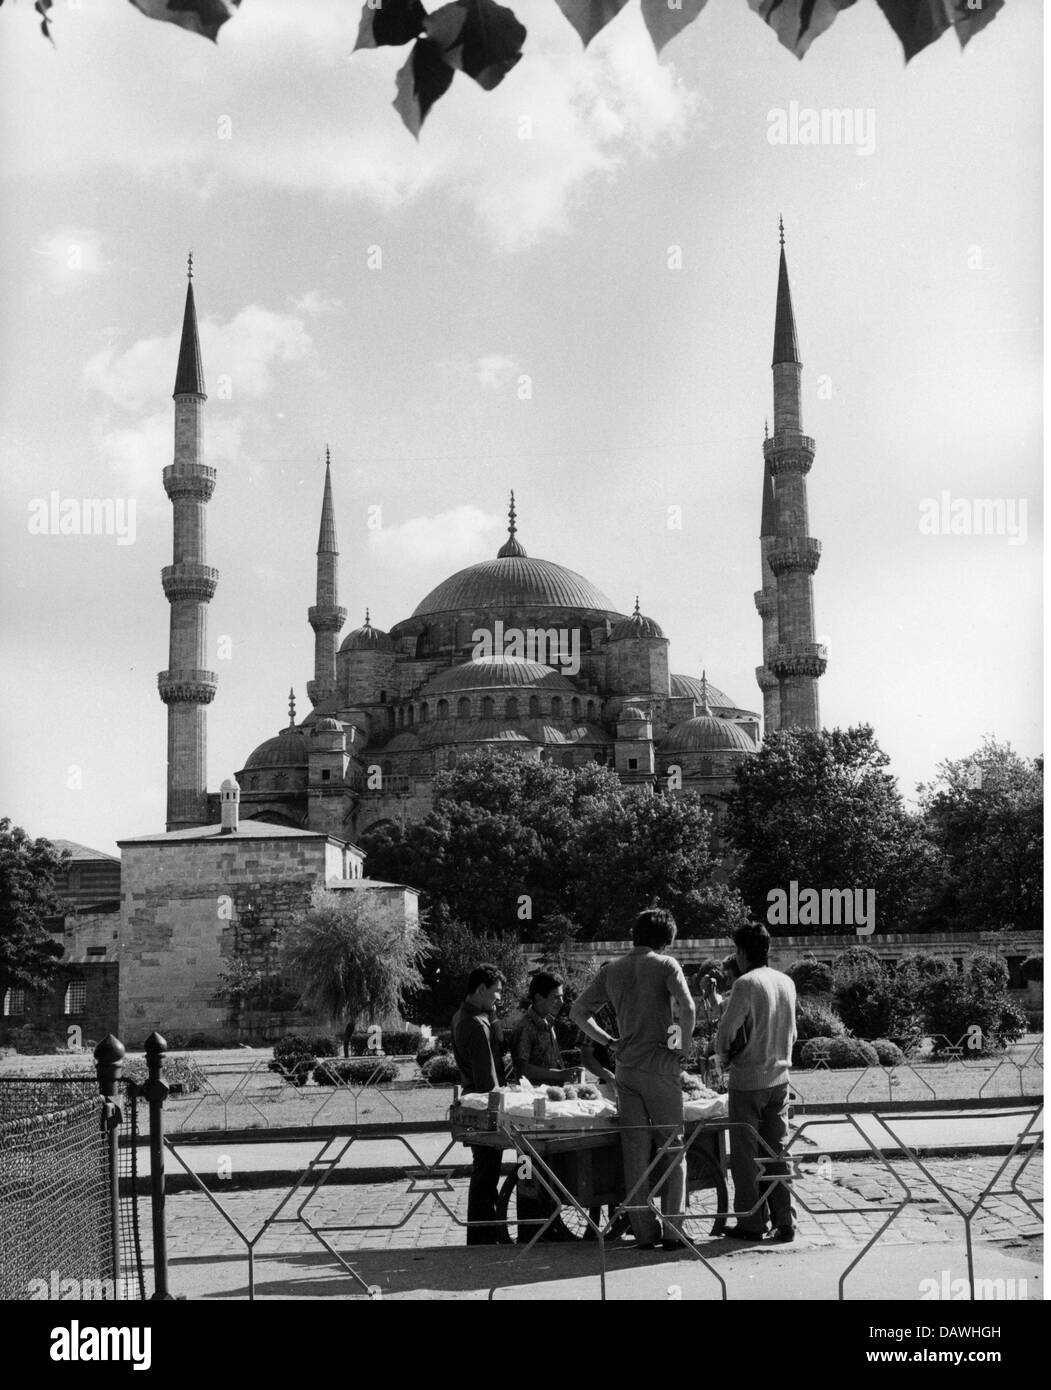 Géographie/voyage, Turquie, villes, Istanbul, bâtiments, Mosquée Sultan Ahmed (également: Mosquée bleue), construit: 1609 - 1616, par ordre de Sultan Ahmed, vue extérieure, années 1960, droits additionnels-Clearences-non disponible Banque D'Images